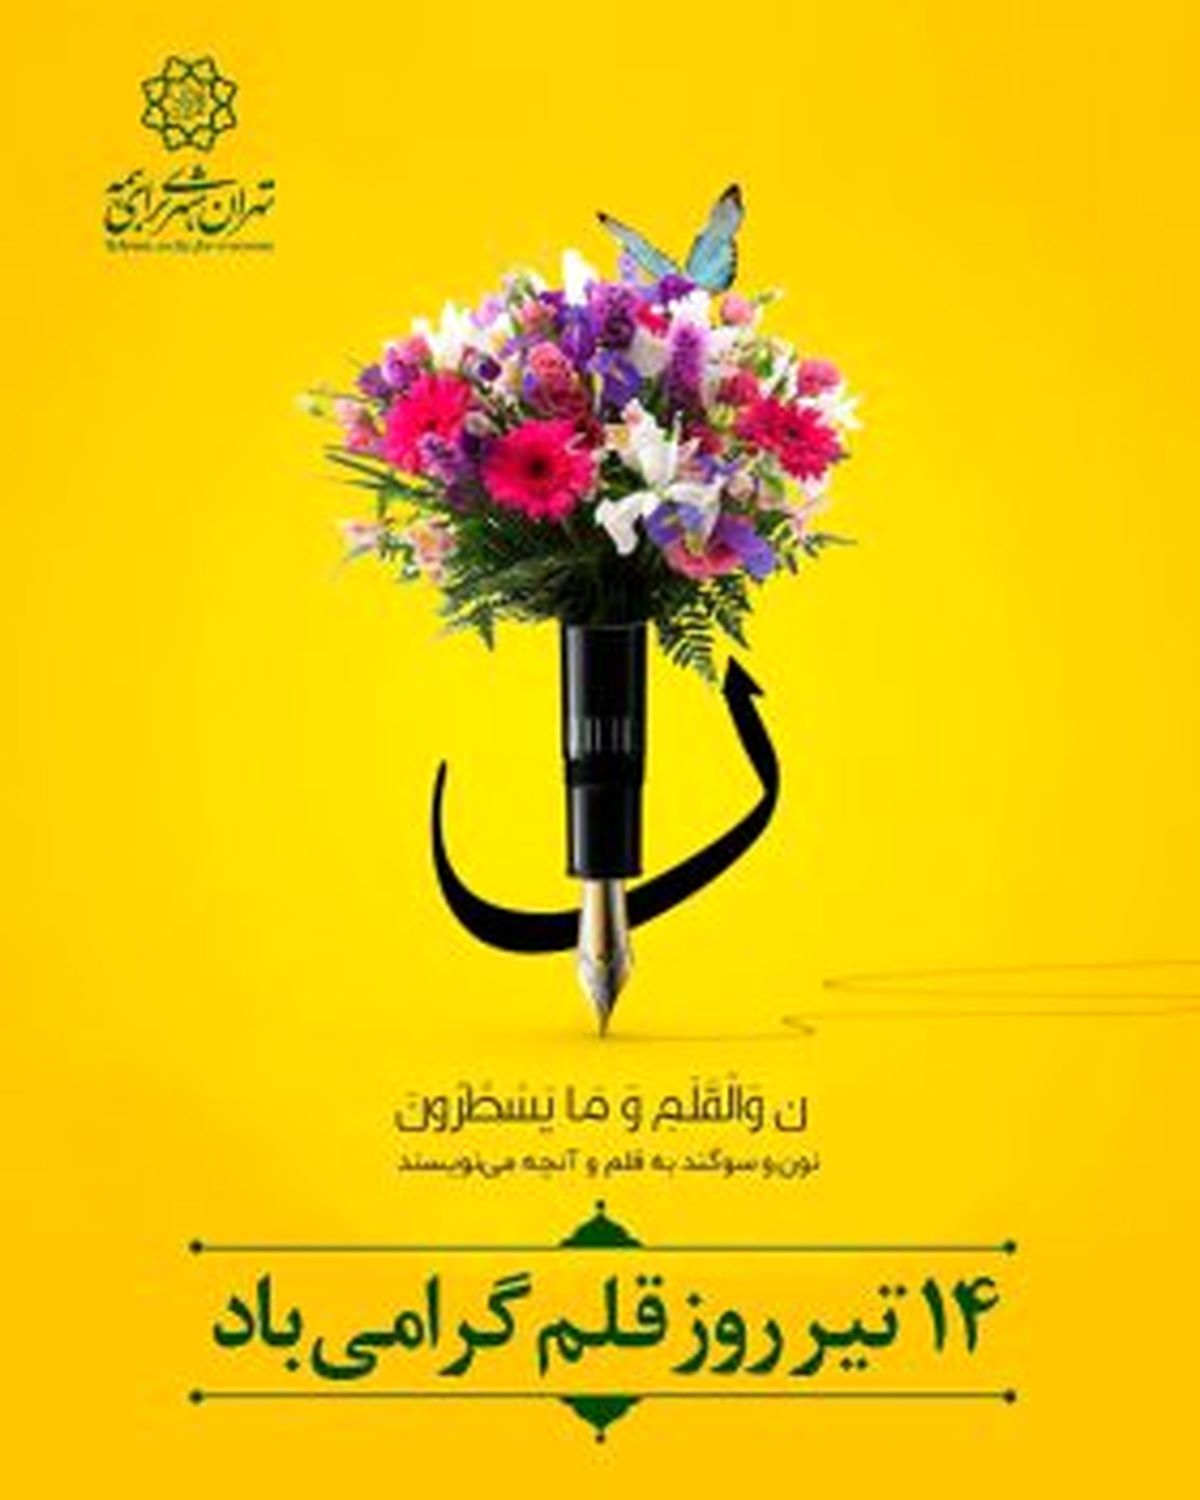 برگزاری جشنواره داستان نویسی در منطقه ۱۳ به مناسبت روز قلم